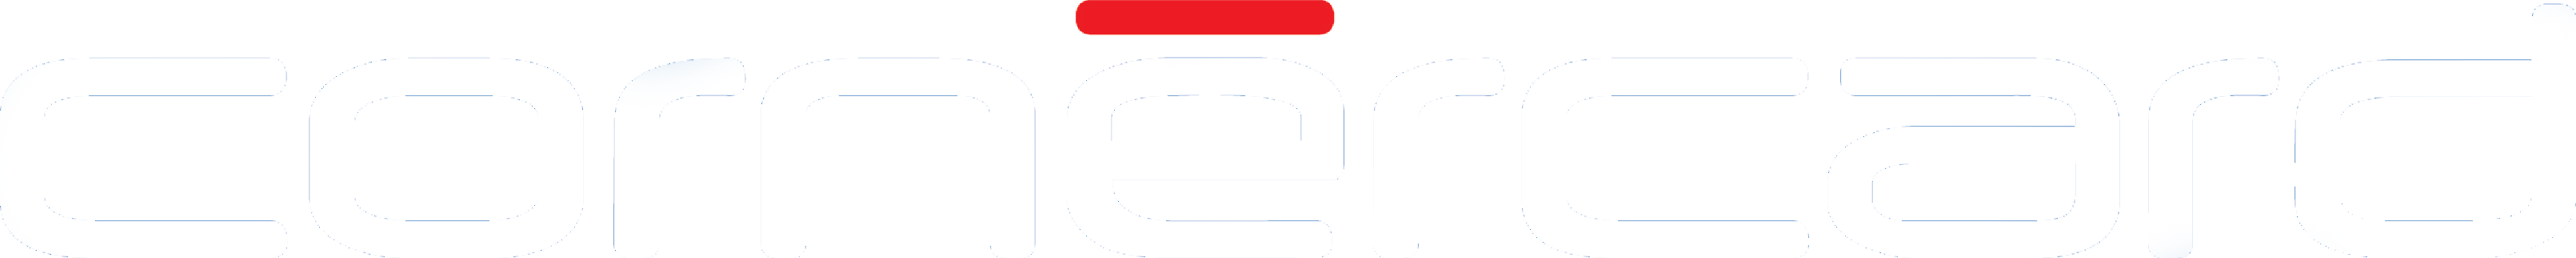 Cornèrcard logo